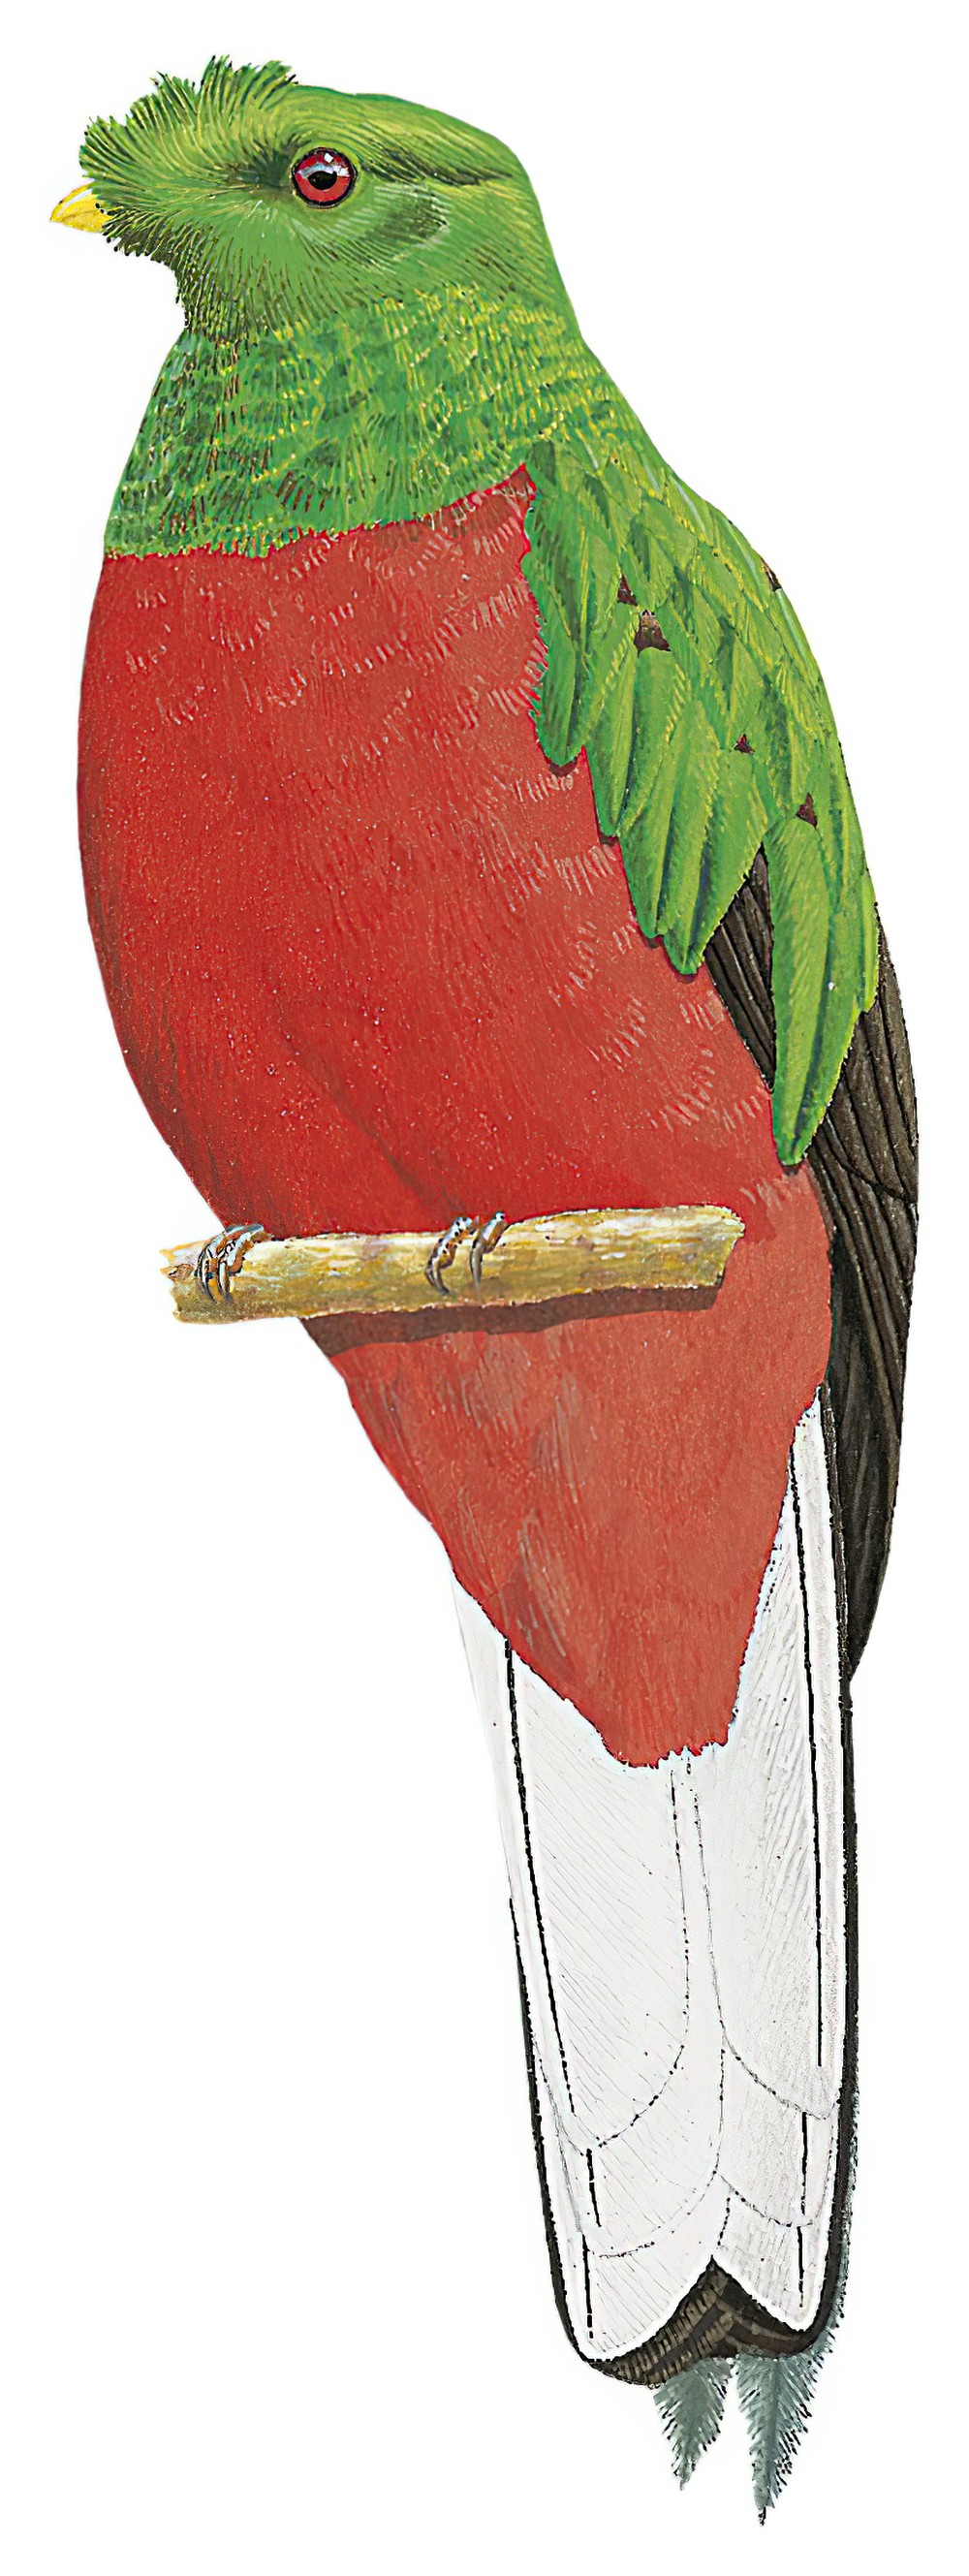 Crested Quetzal / Pharomachrus antisianus